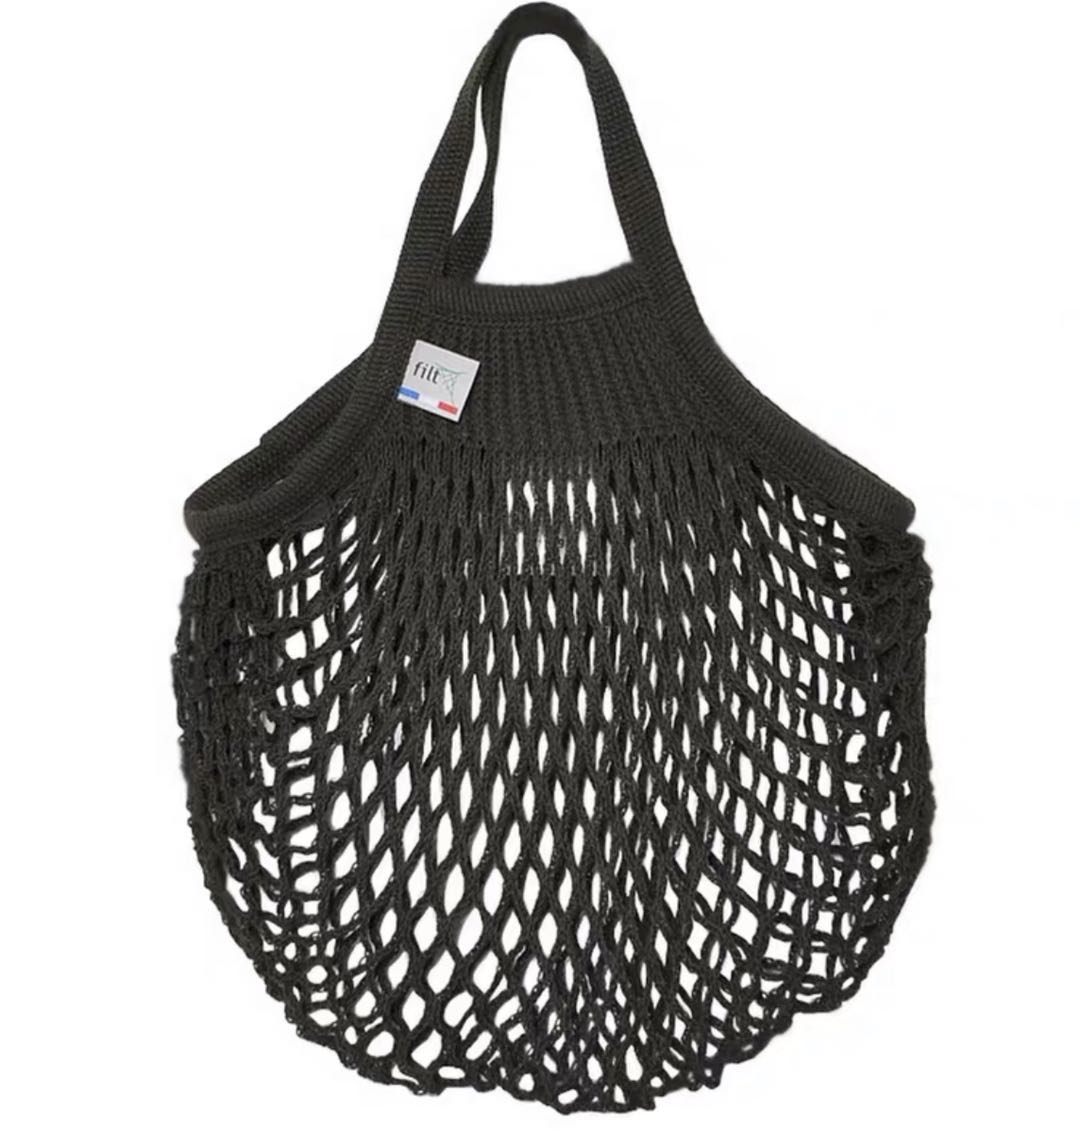 Filt Black Net Shopper Bag